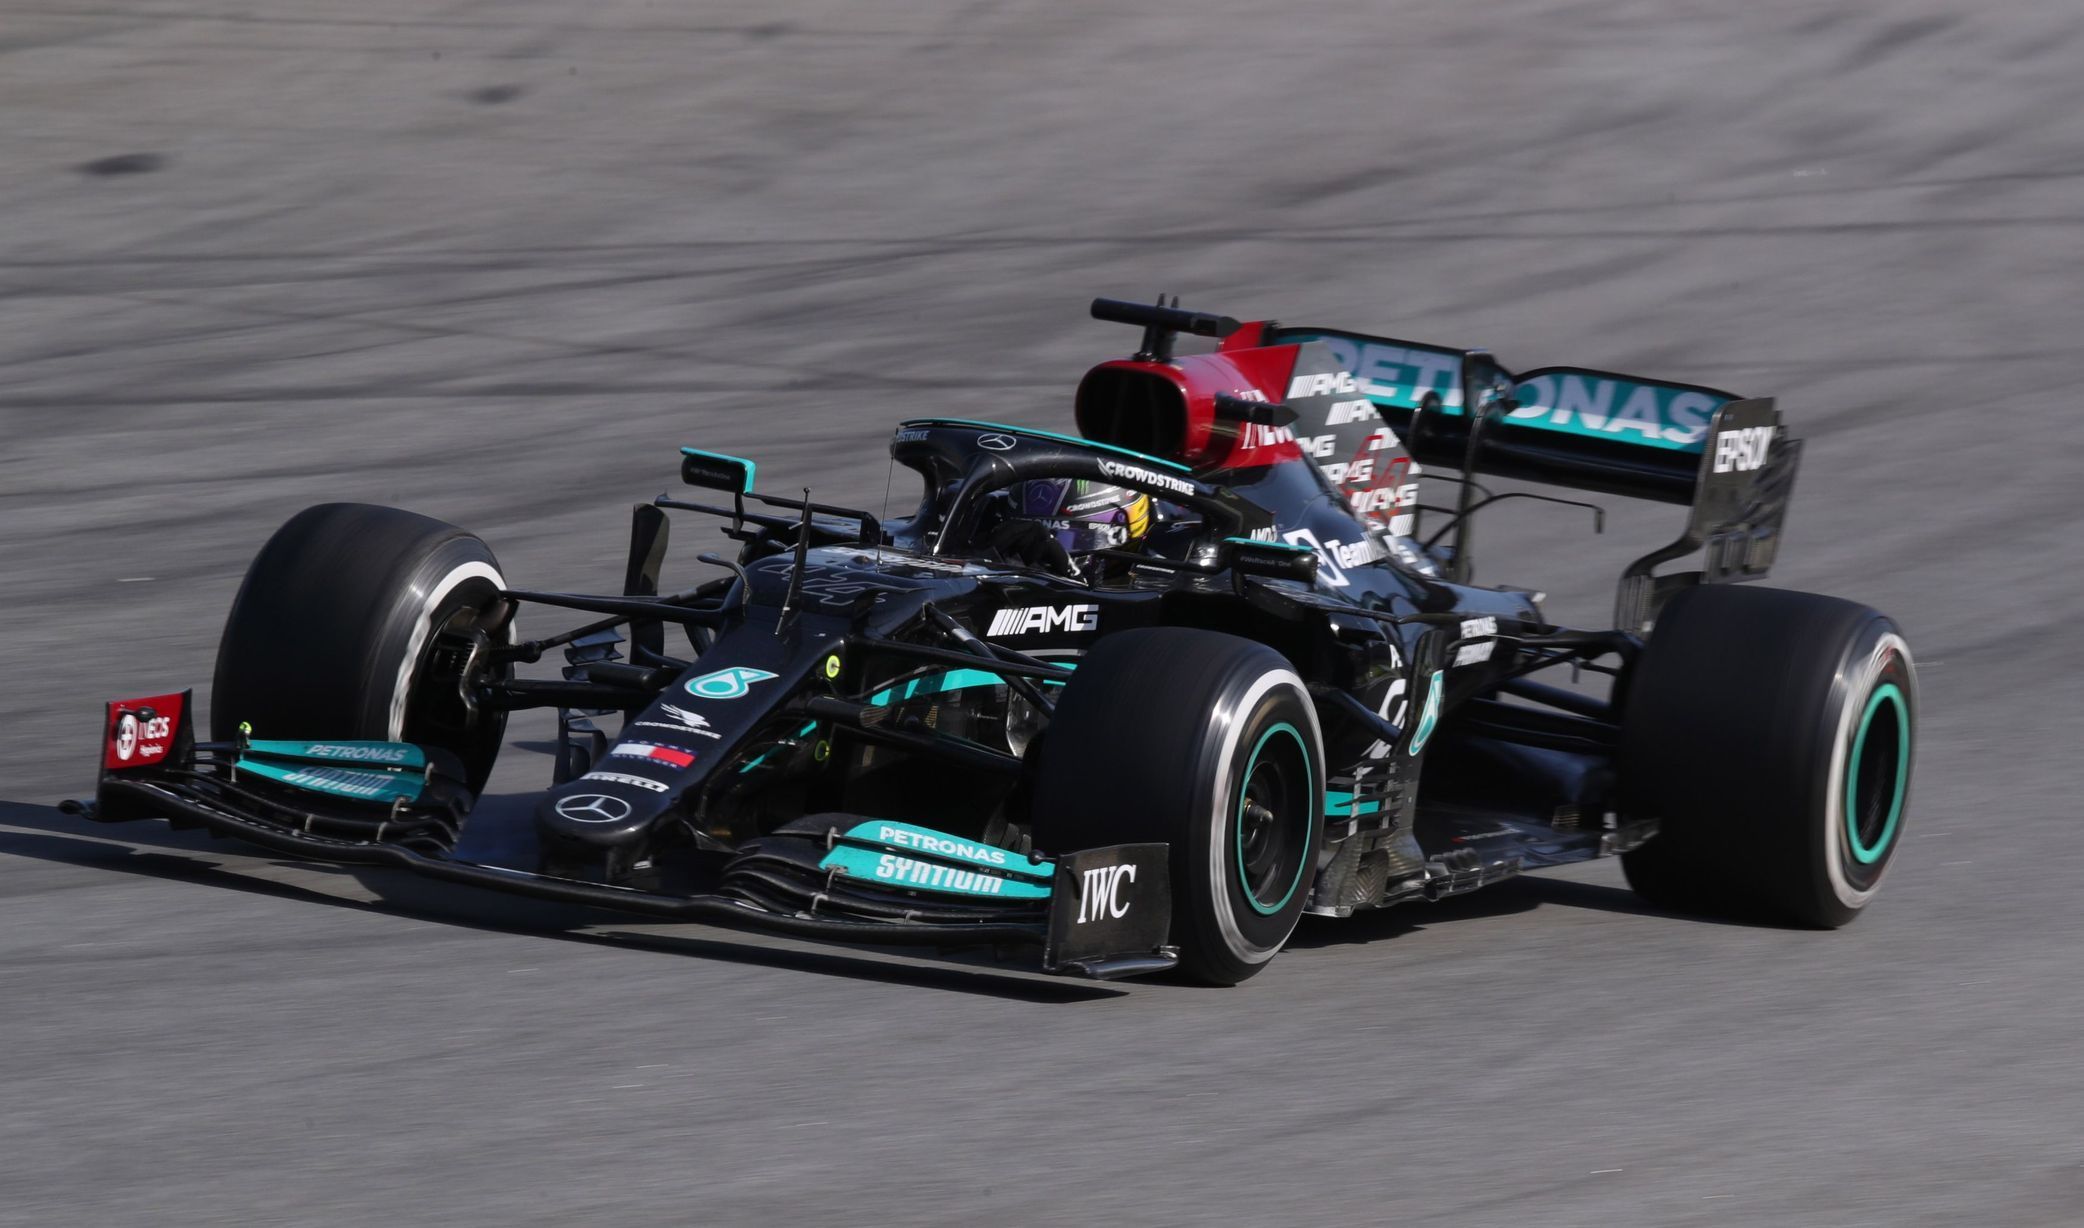 Lewis Hamilton v Mercedesu při závodě v Sao Paulu 2021